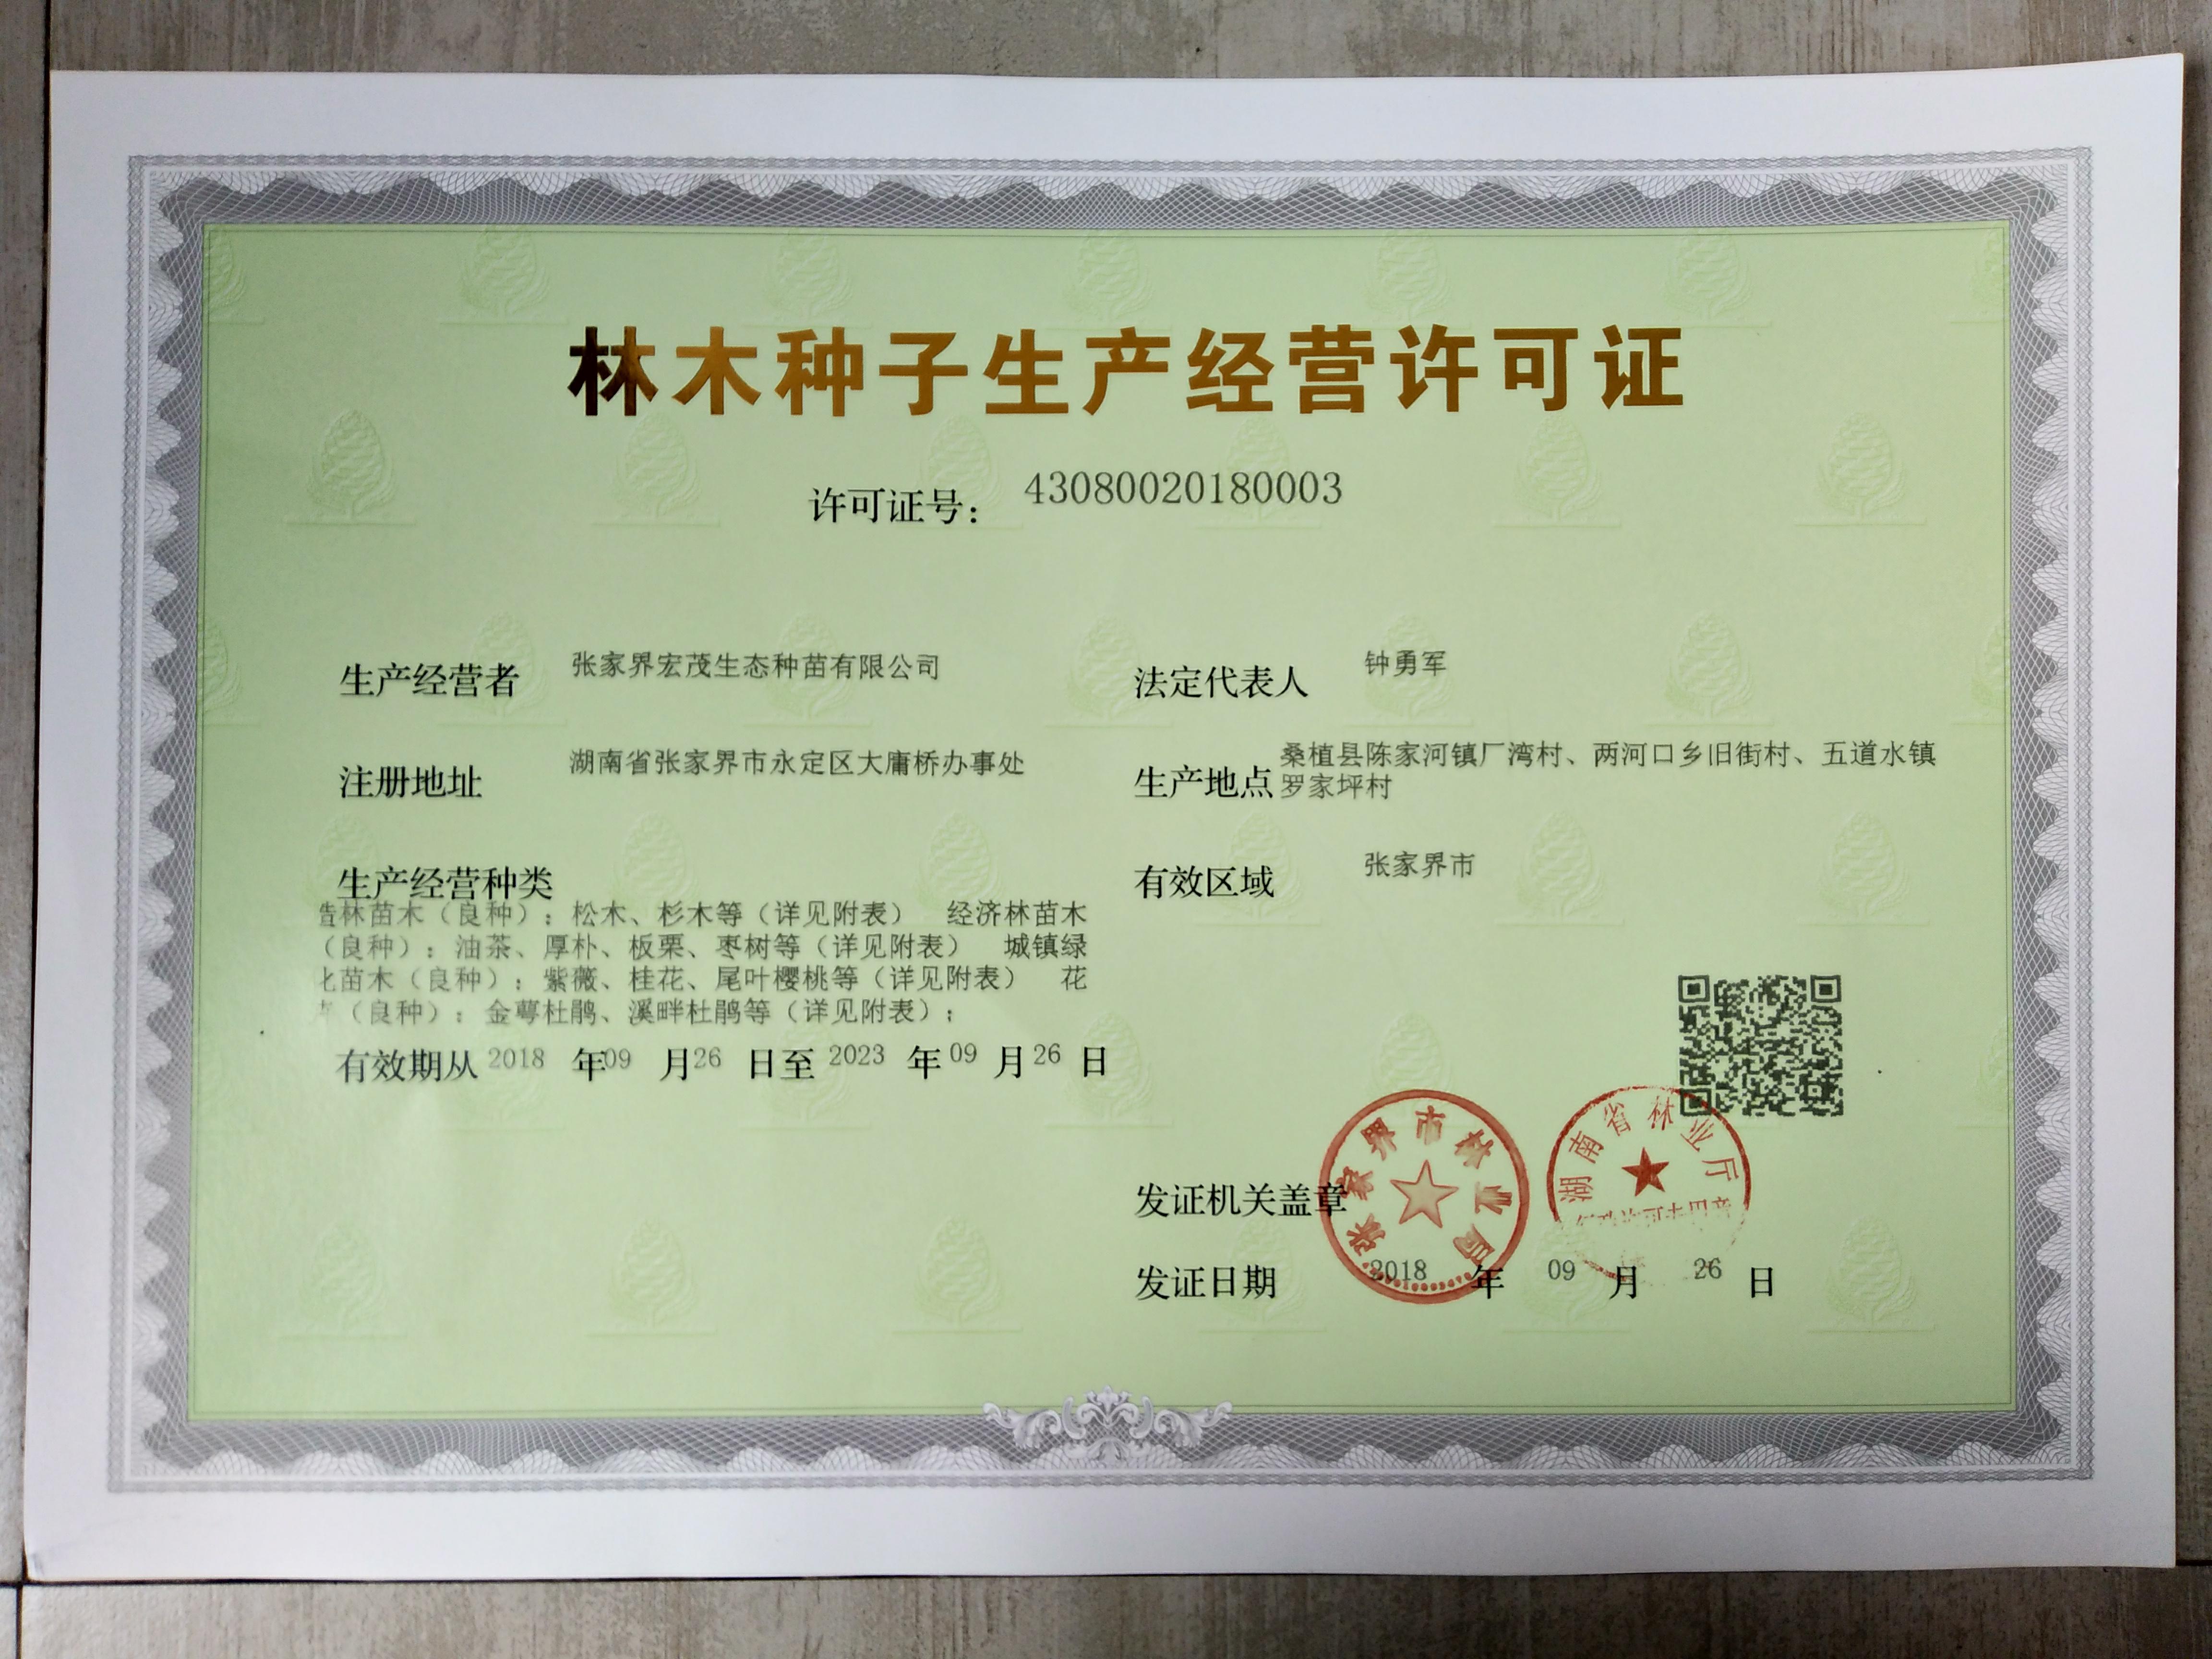 林木种子生产经营许可证